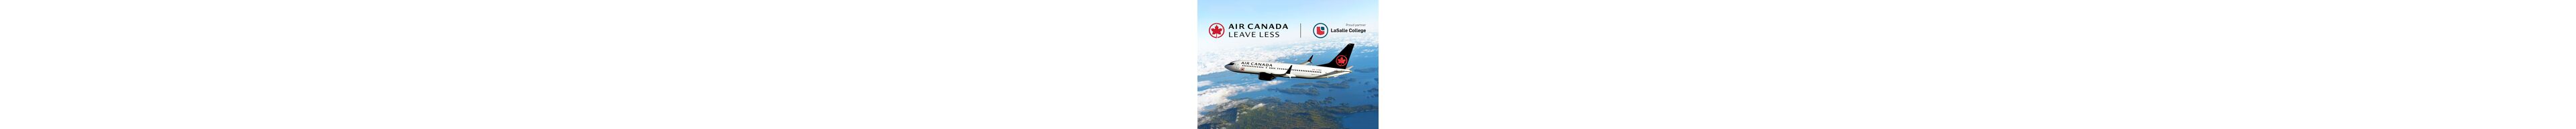 Avion Air Canada en vol avec le slogan "LEAVE LESS" et le logo du Collège LaSalle, indiquant un partenariat pour la durabilité environnementale.